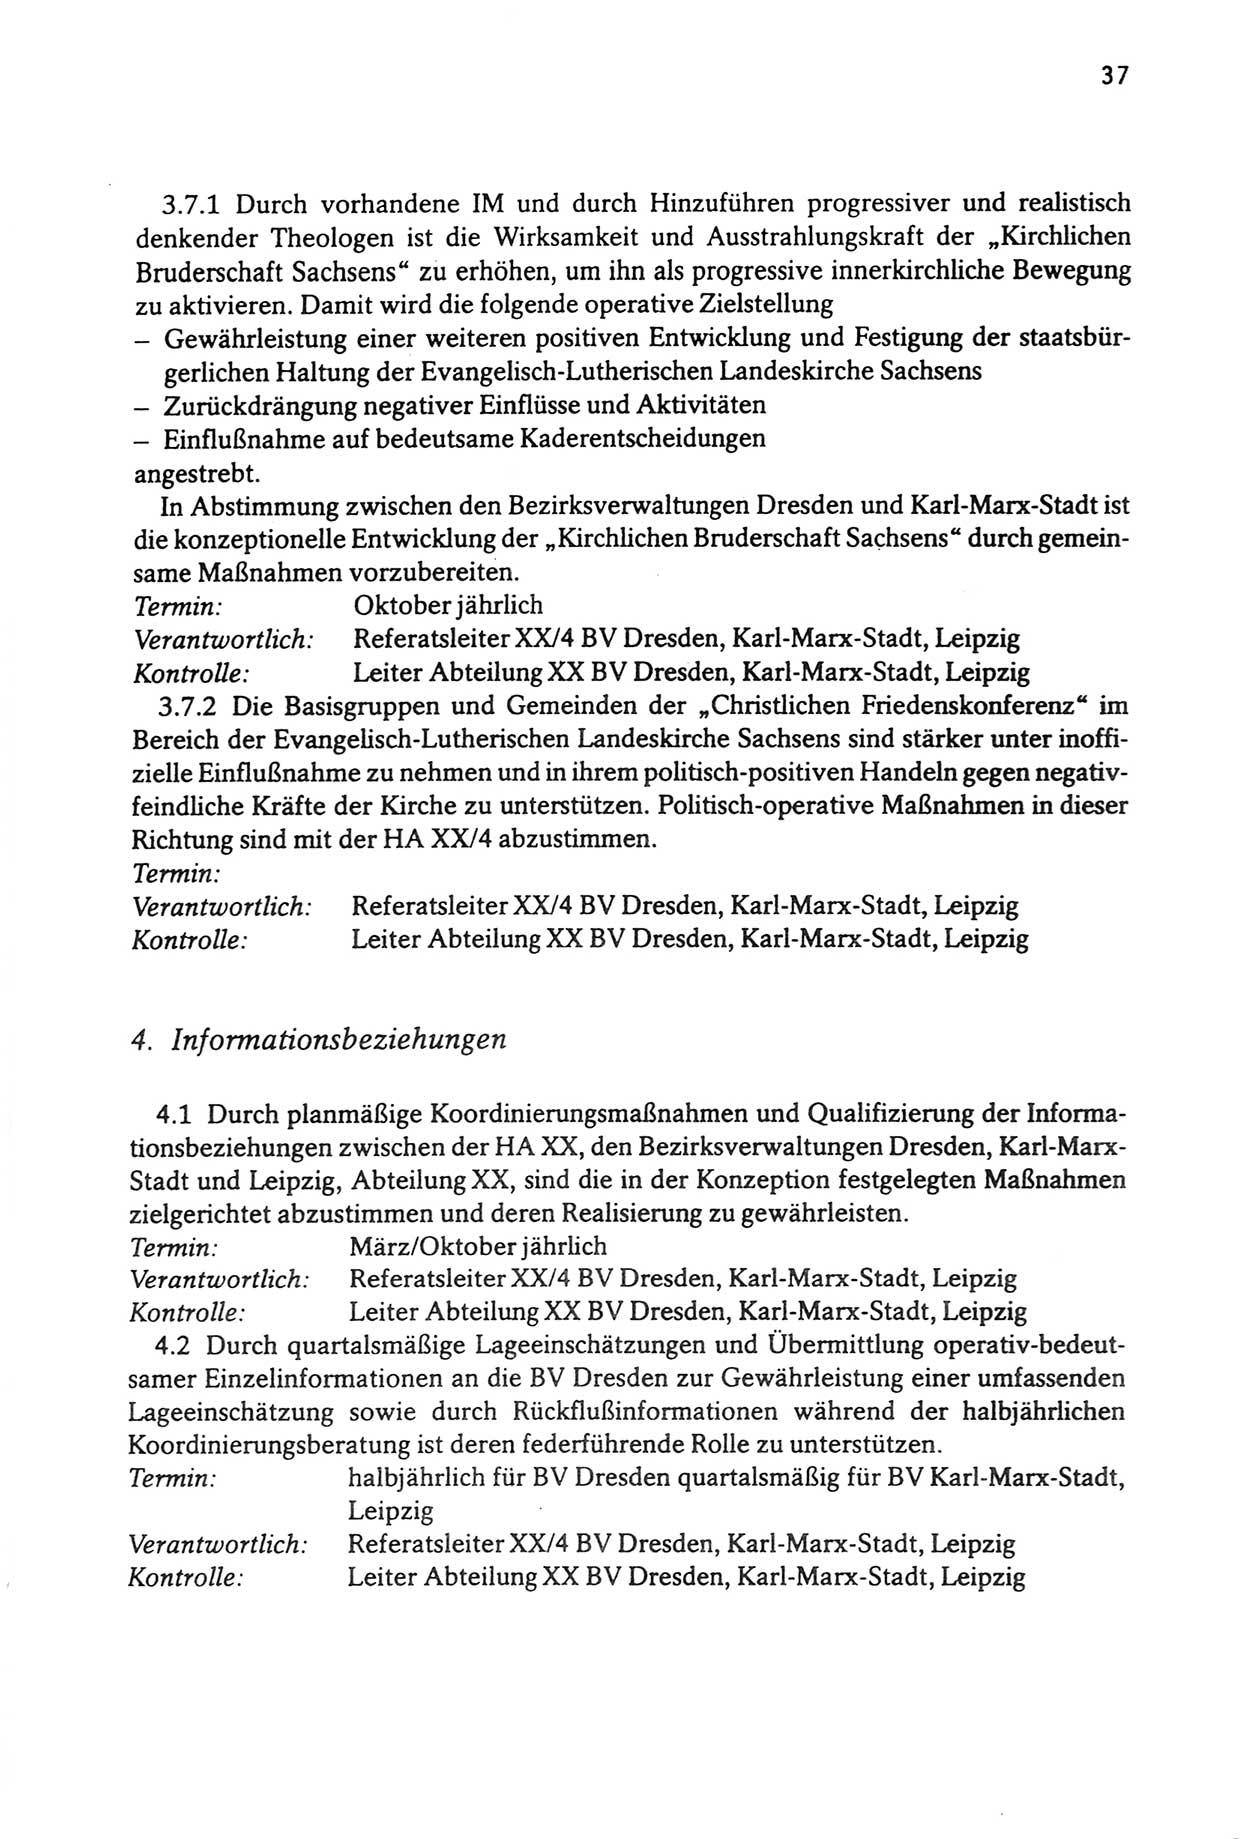 Zwie-Gespräch, Beiträge zur Aufarbeitung der Stasi-Vergangenheit [Deutsche Demokratische Republik (DDR)], Ausgabe Nr. 3, Berlin 1991, Seite 37 (Zwie-Gespr. Ausg. 3 1991, S. 37)